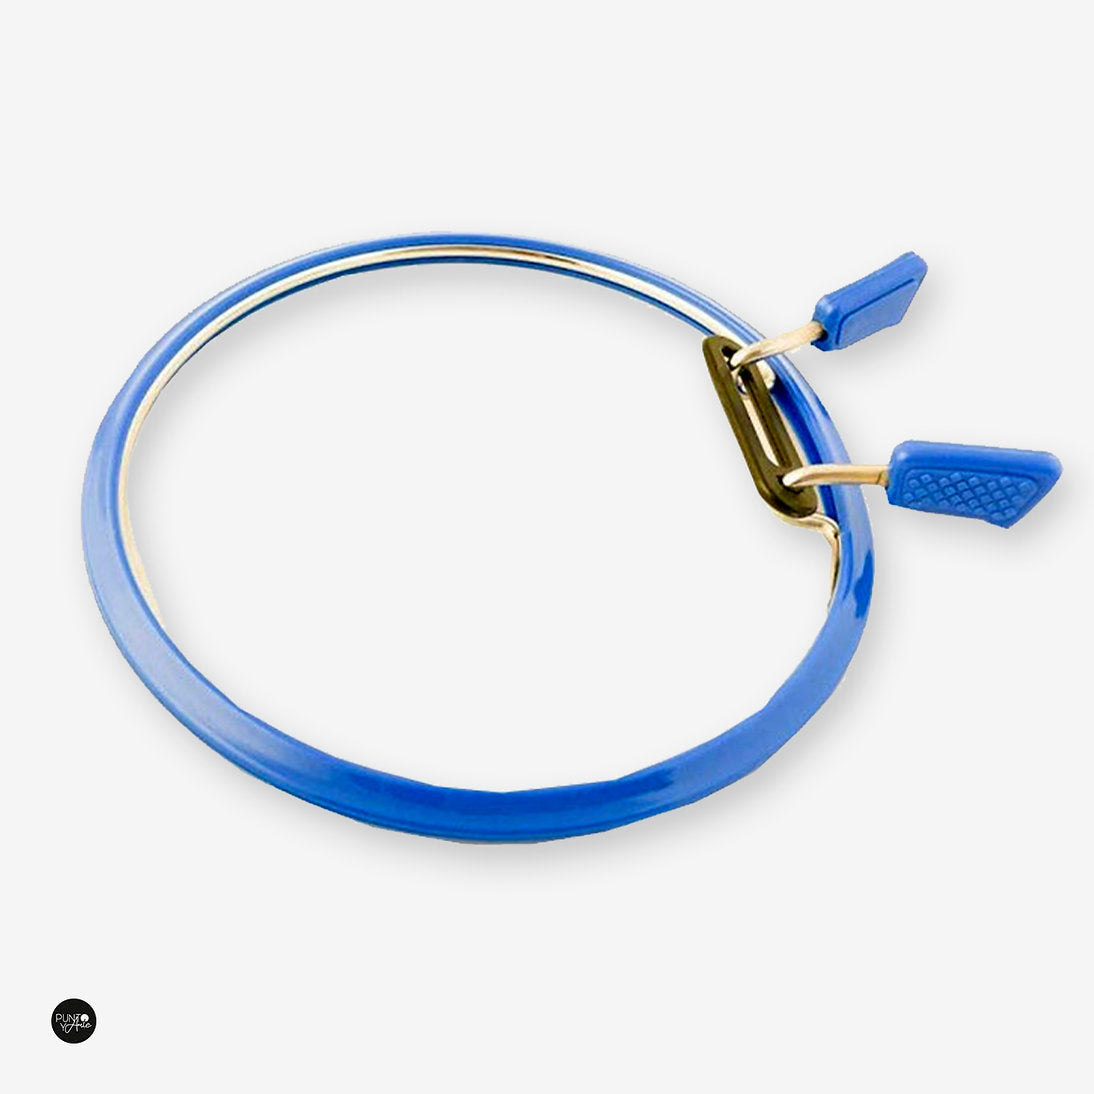 Cerceau flexible Nurge 160 en bleu : votre compagnon idéal pour des projets de broderie précis et sans effort